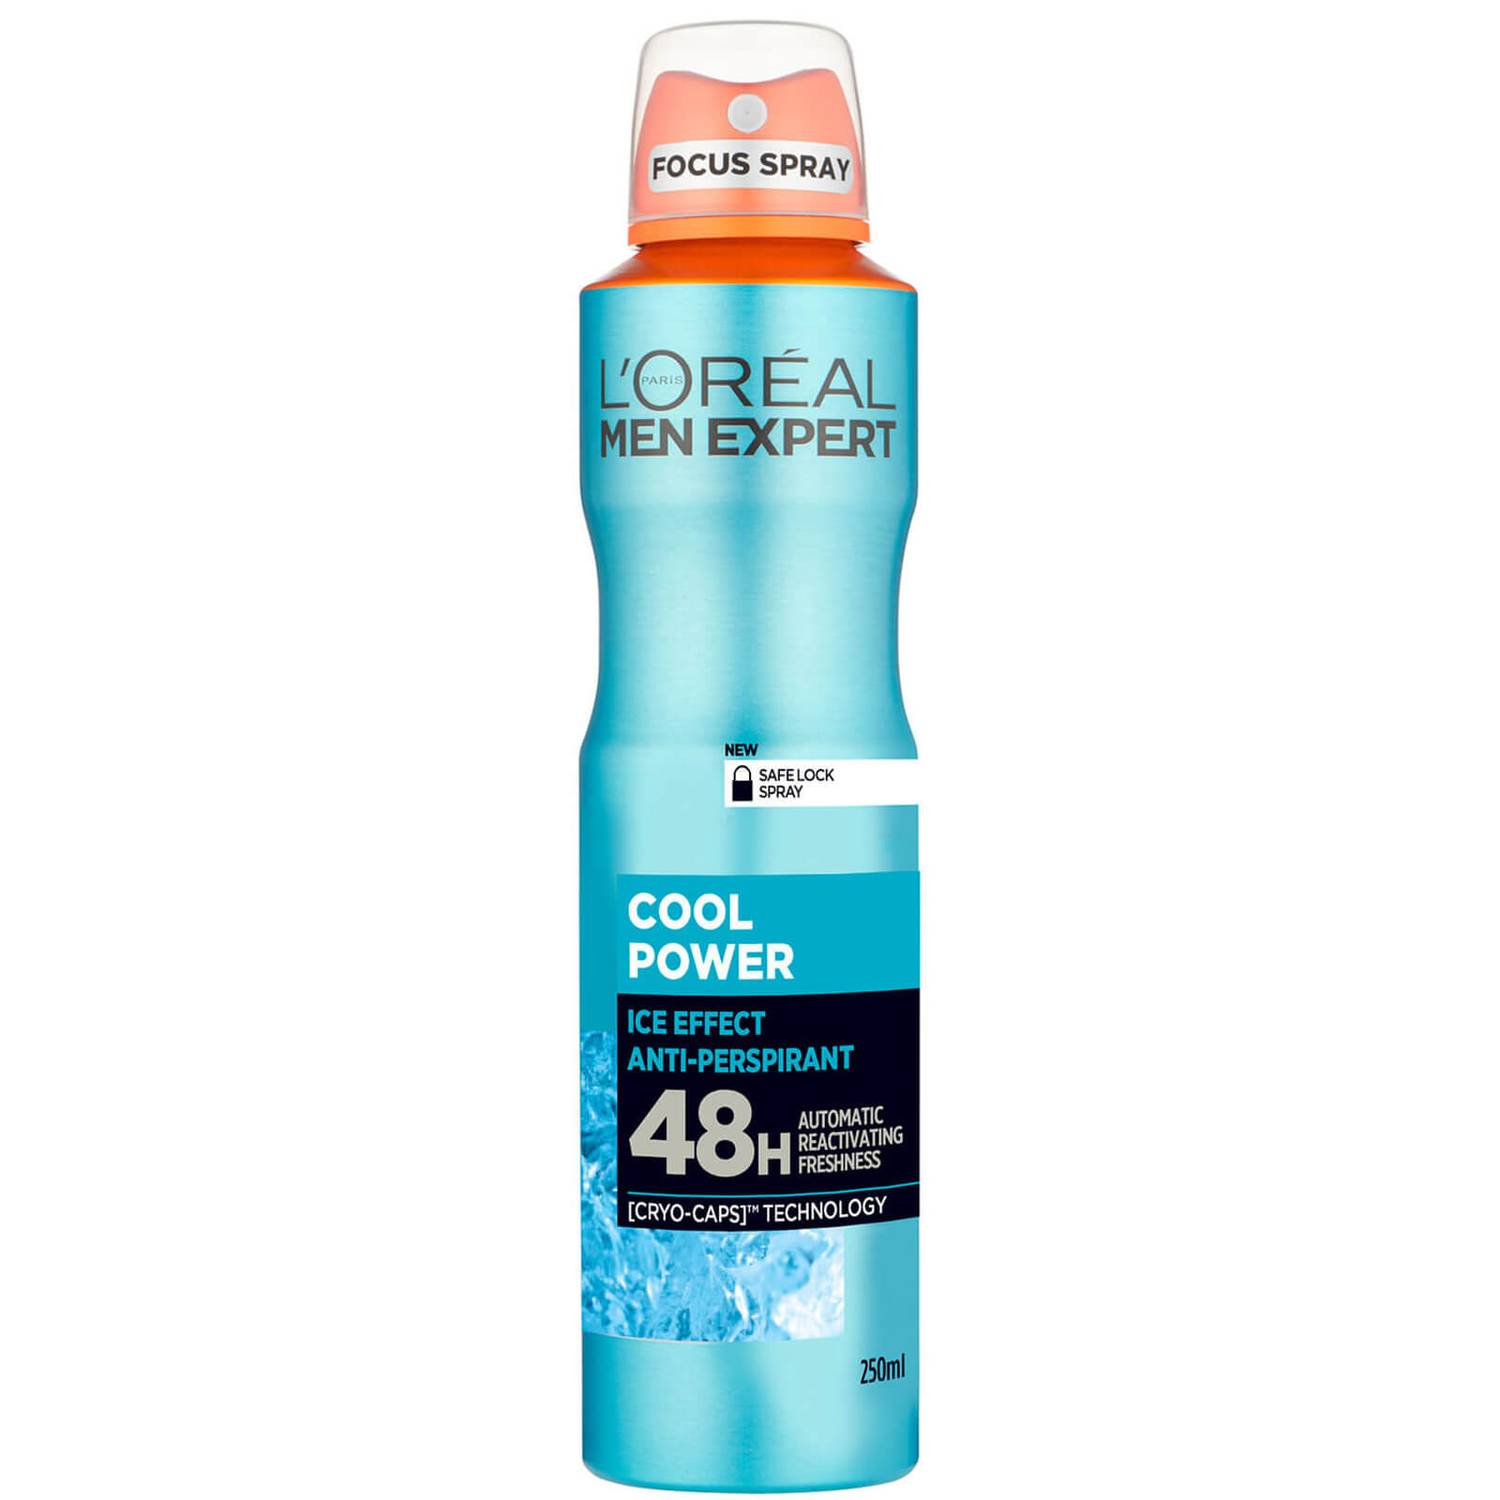 Antiperspirant deodorant Loreal Men Expert Cool Power 48h, 250ml